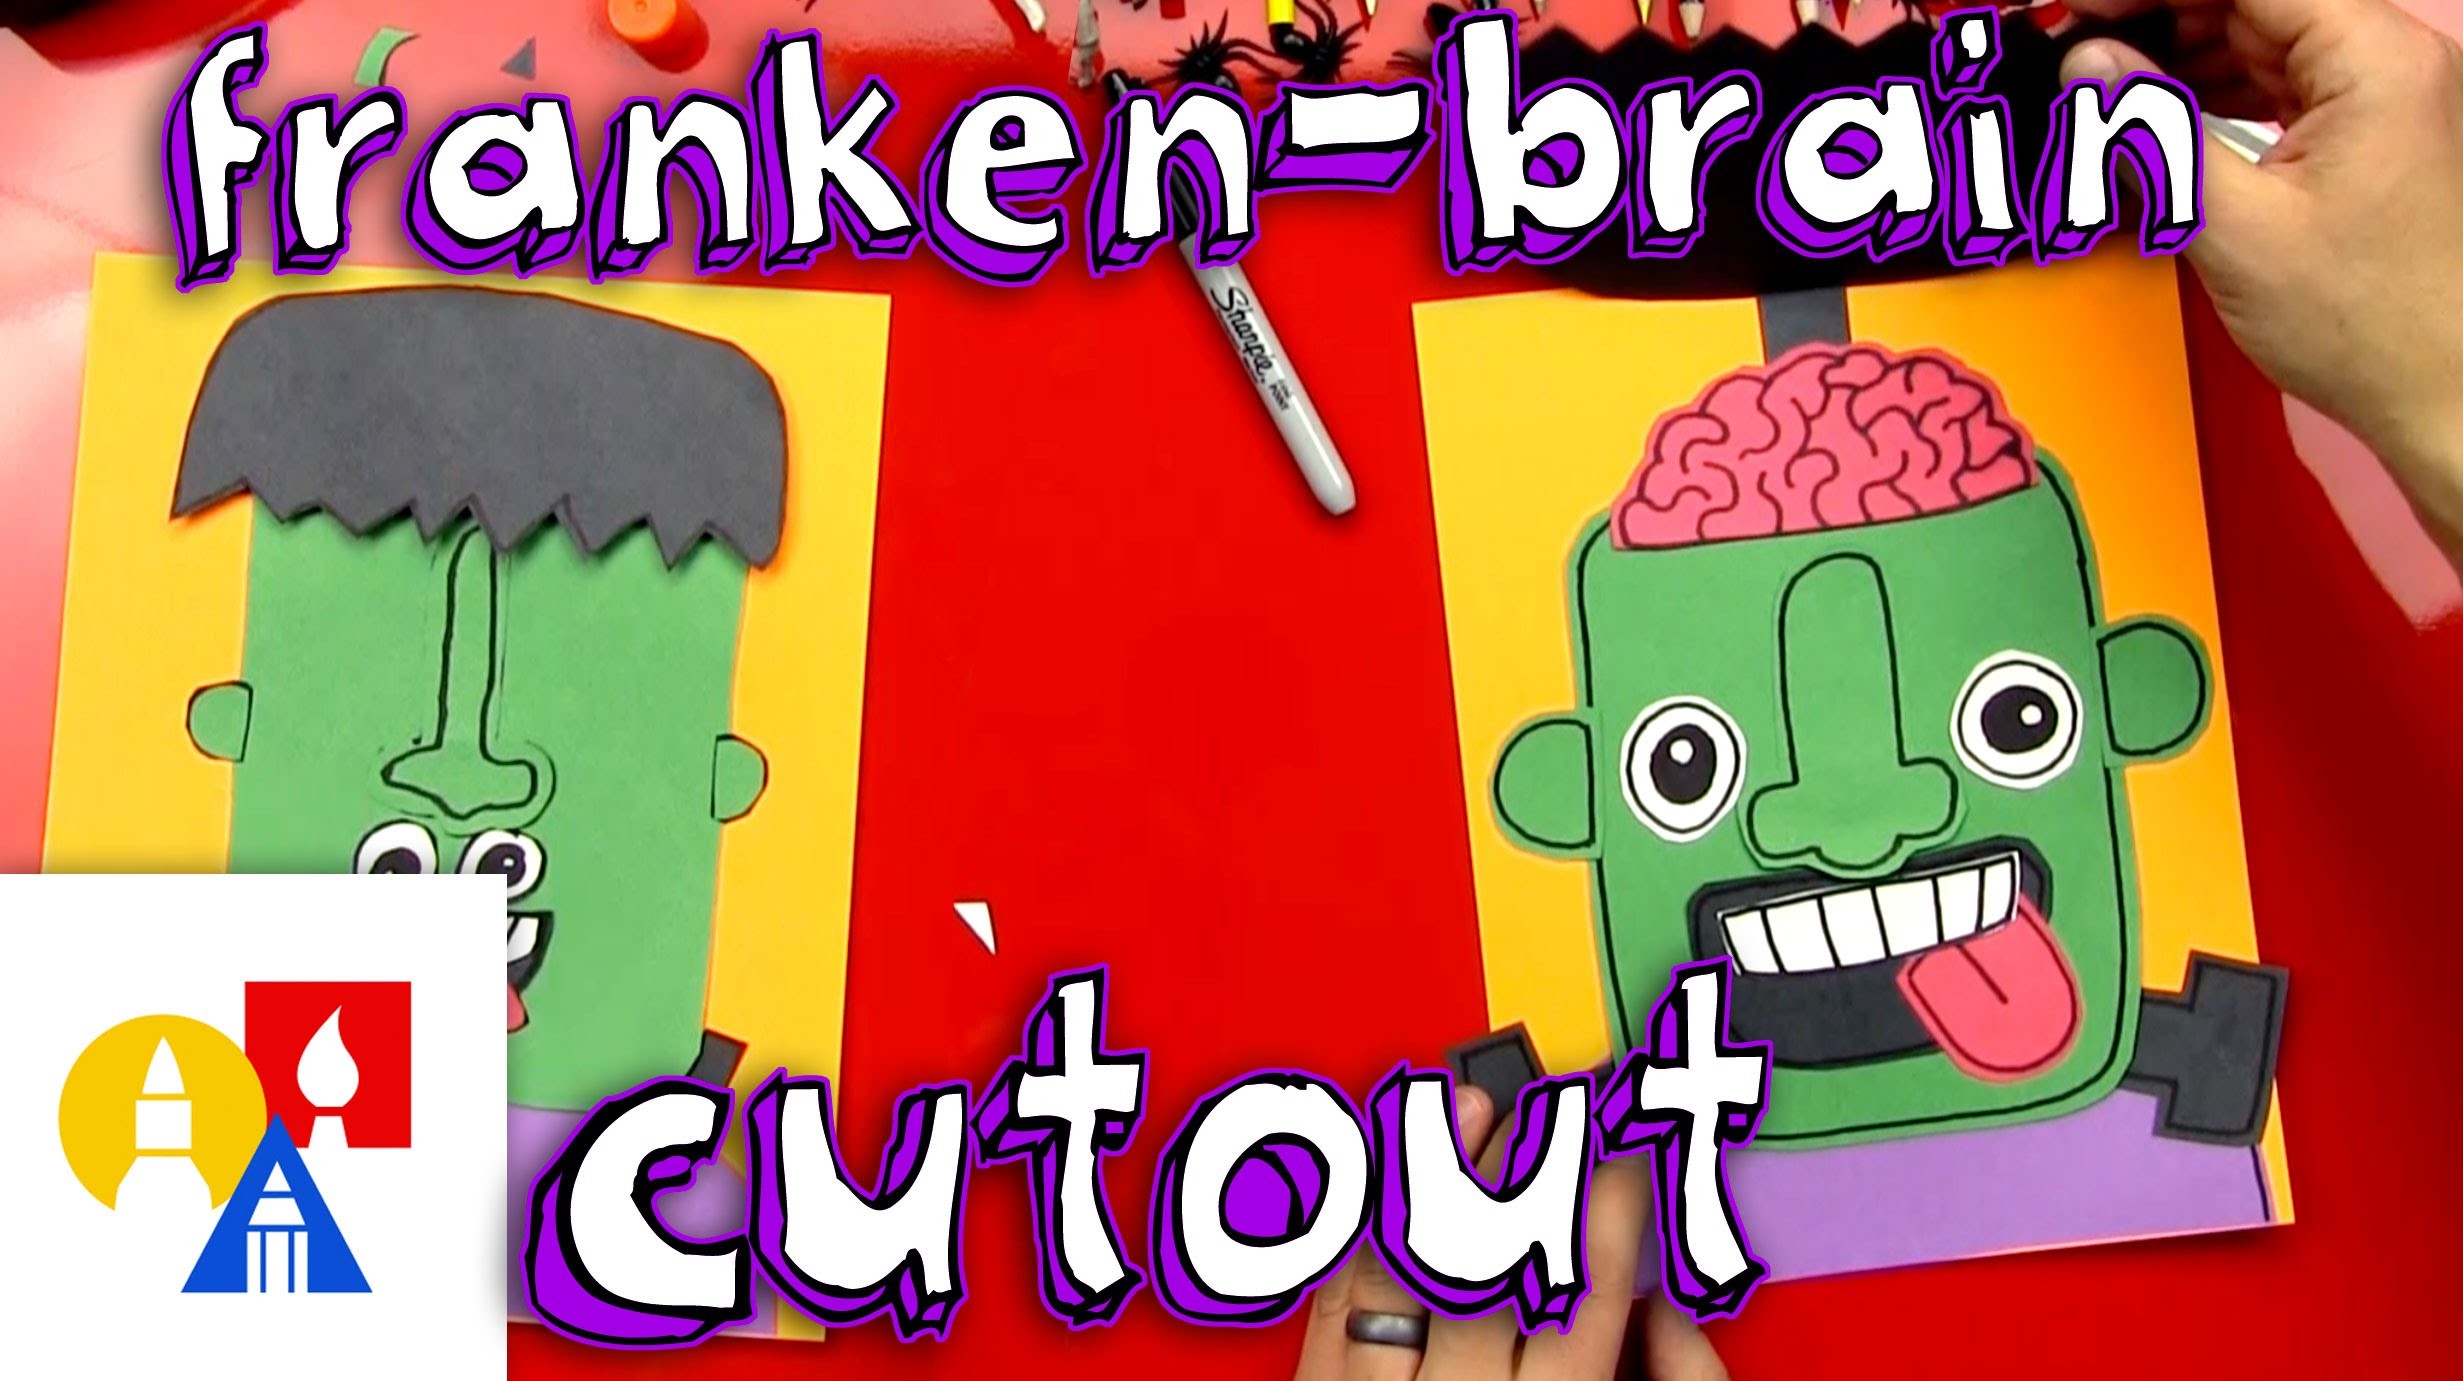 Franken Brain Cutout